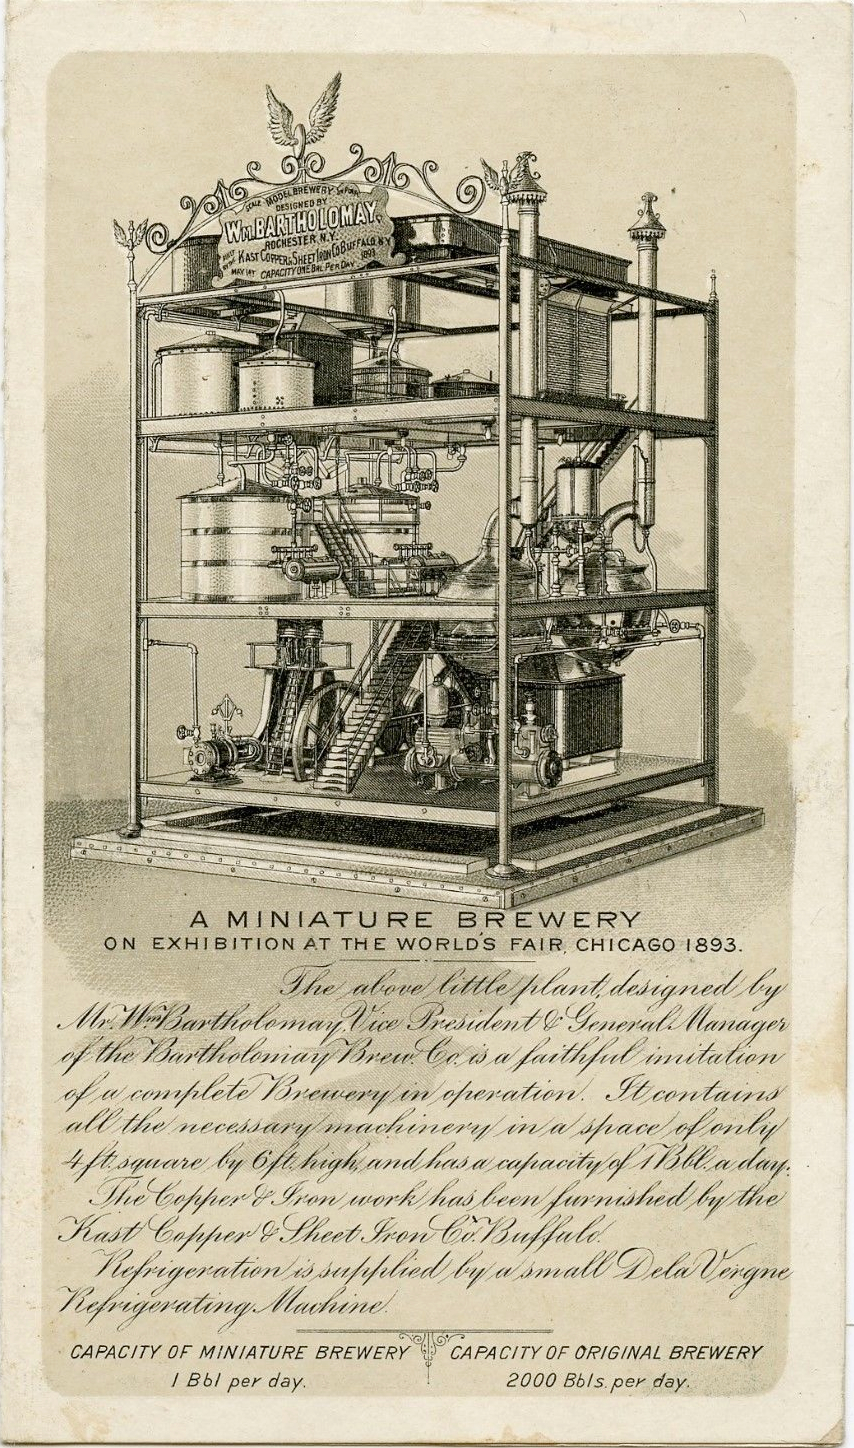 bartholomay-brewing-co-exhibit-1893